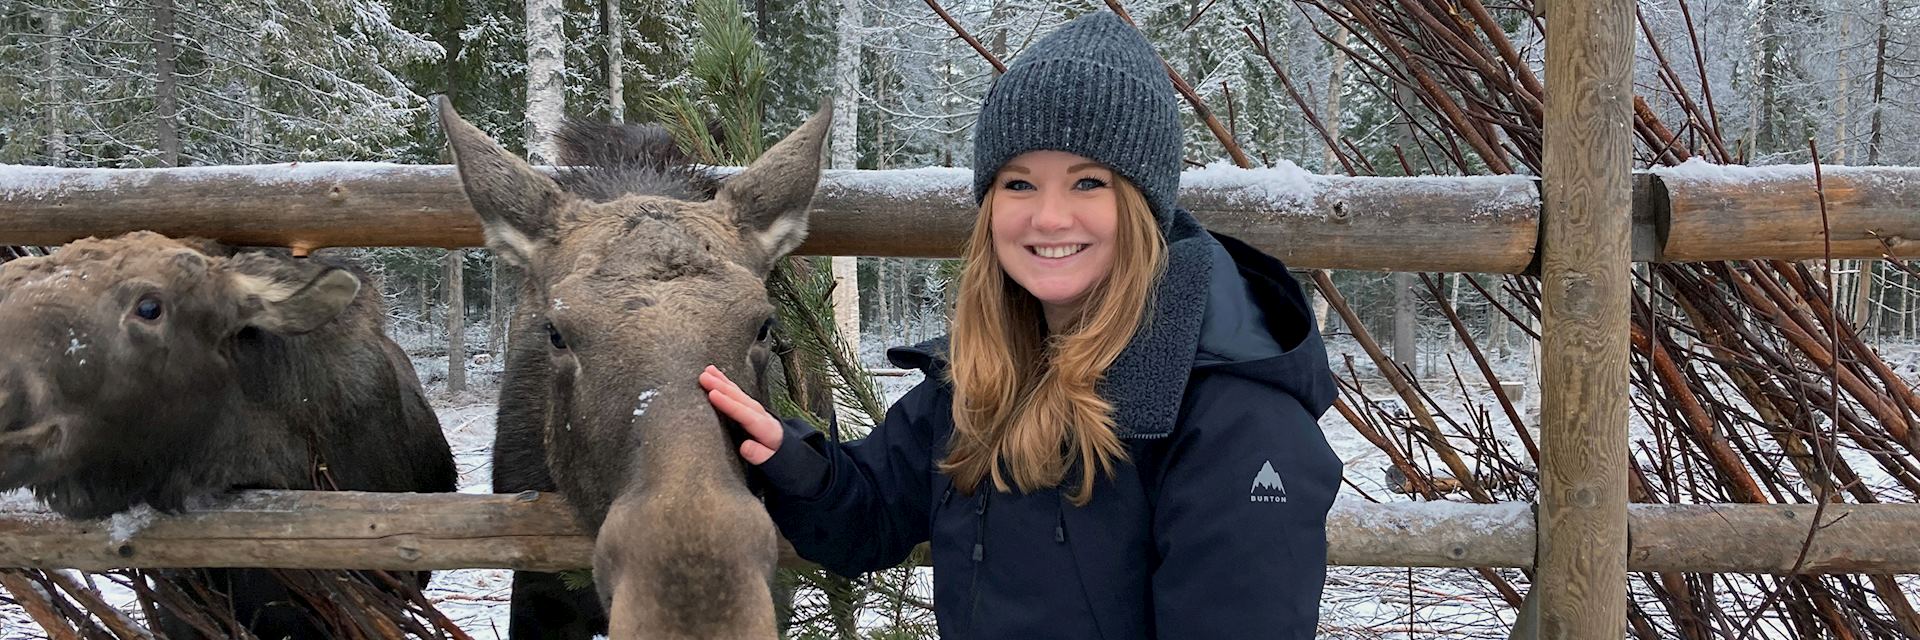 Aislyn feeding a moose in Sweden